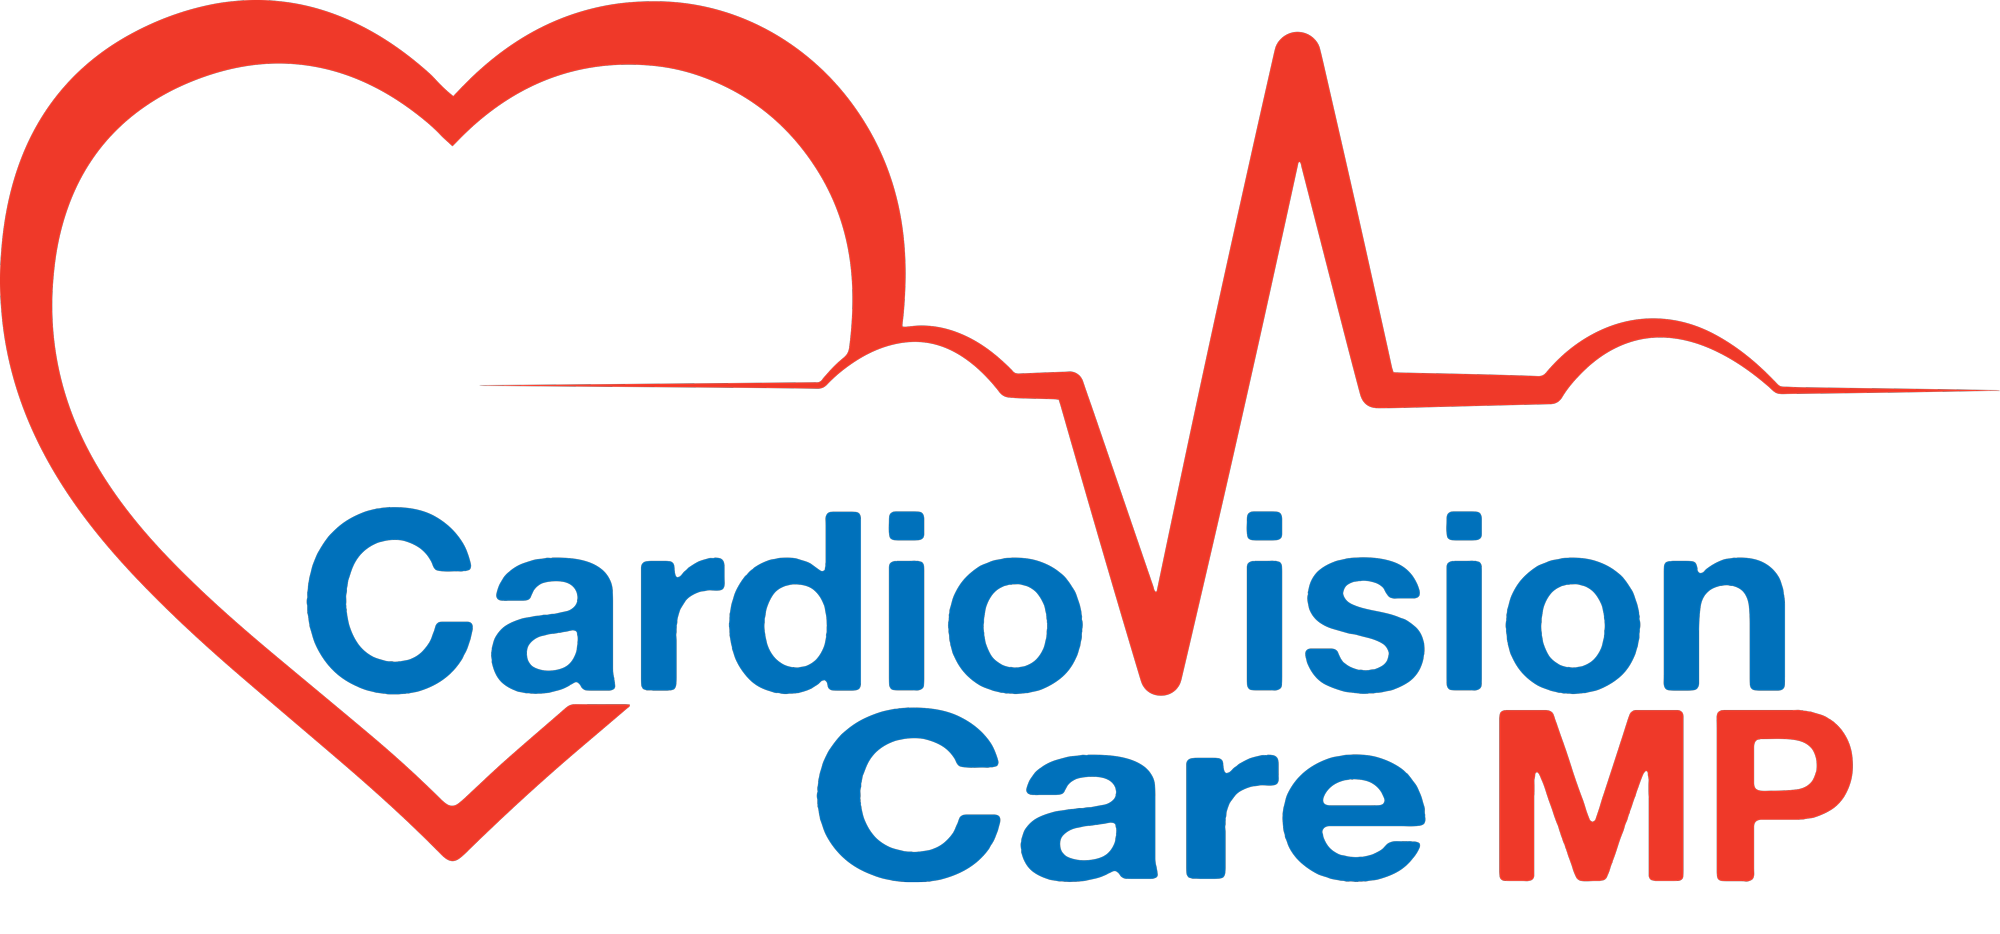 CardioVision Care Logo